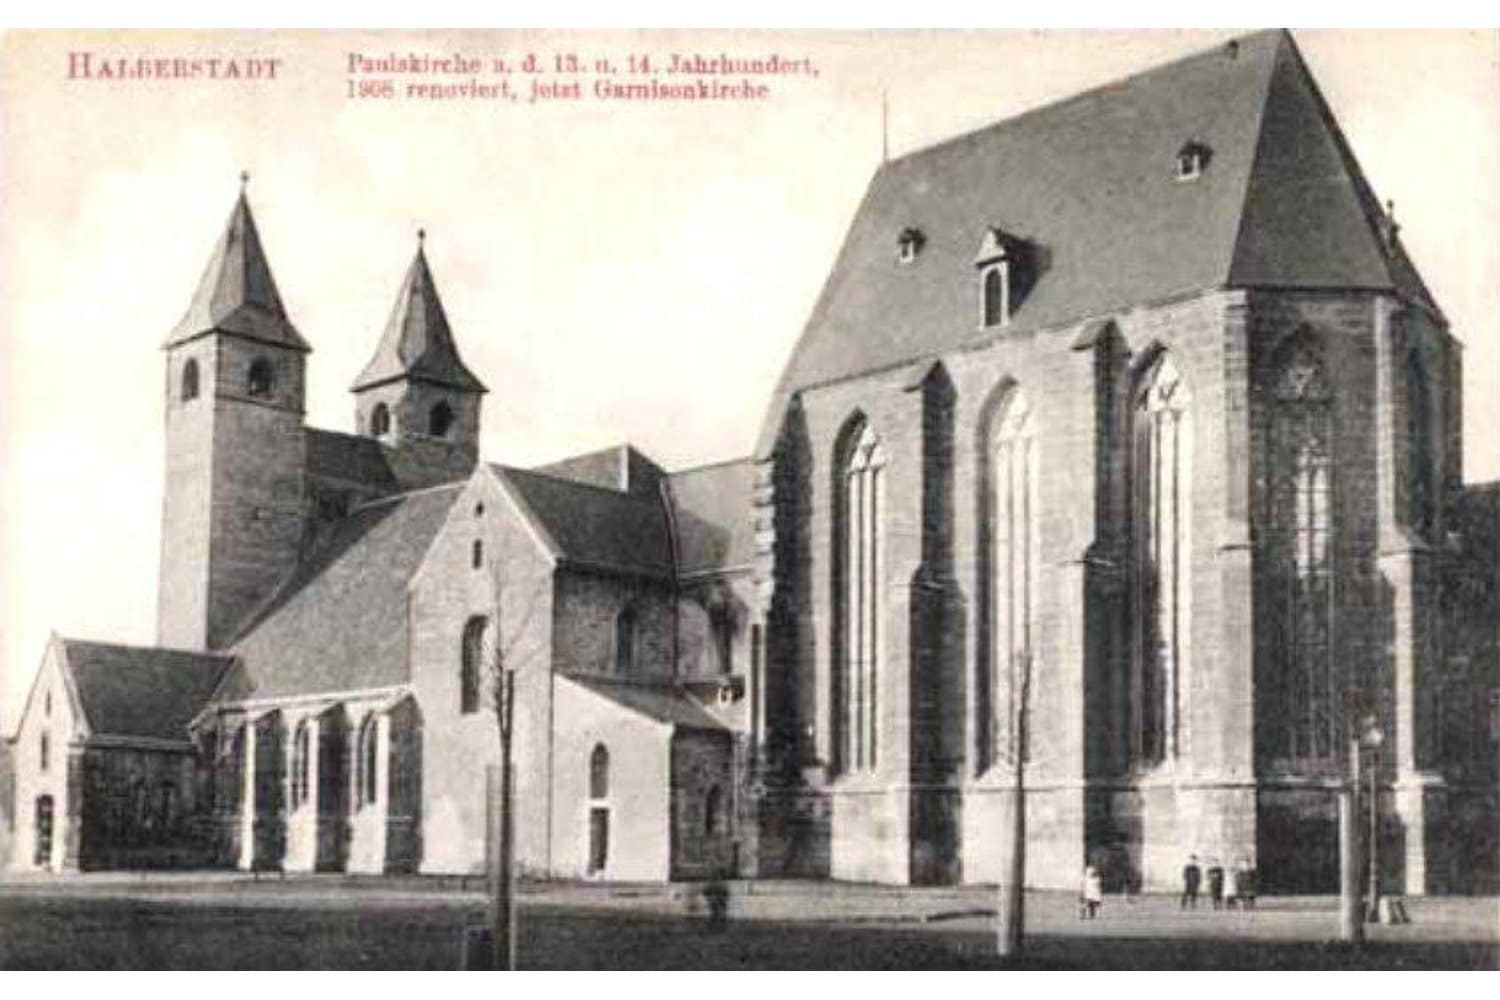 Die Paulskirche Halberstadt nach ihrer Restaurierung im Jahr 1908. Foto: Rud. Lohse Postkartenverlag, Halberstadt, gemeinfrei: https://commons.wikimedia.org/w/index.php?curid=53747089